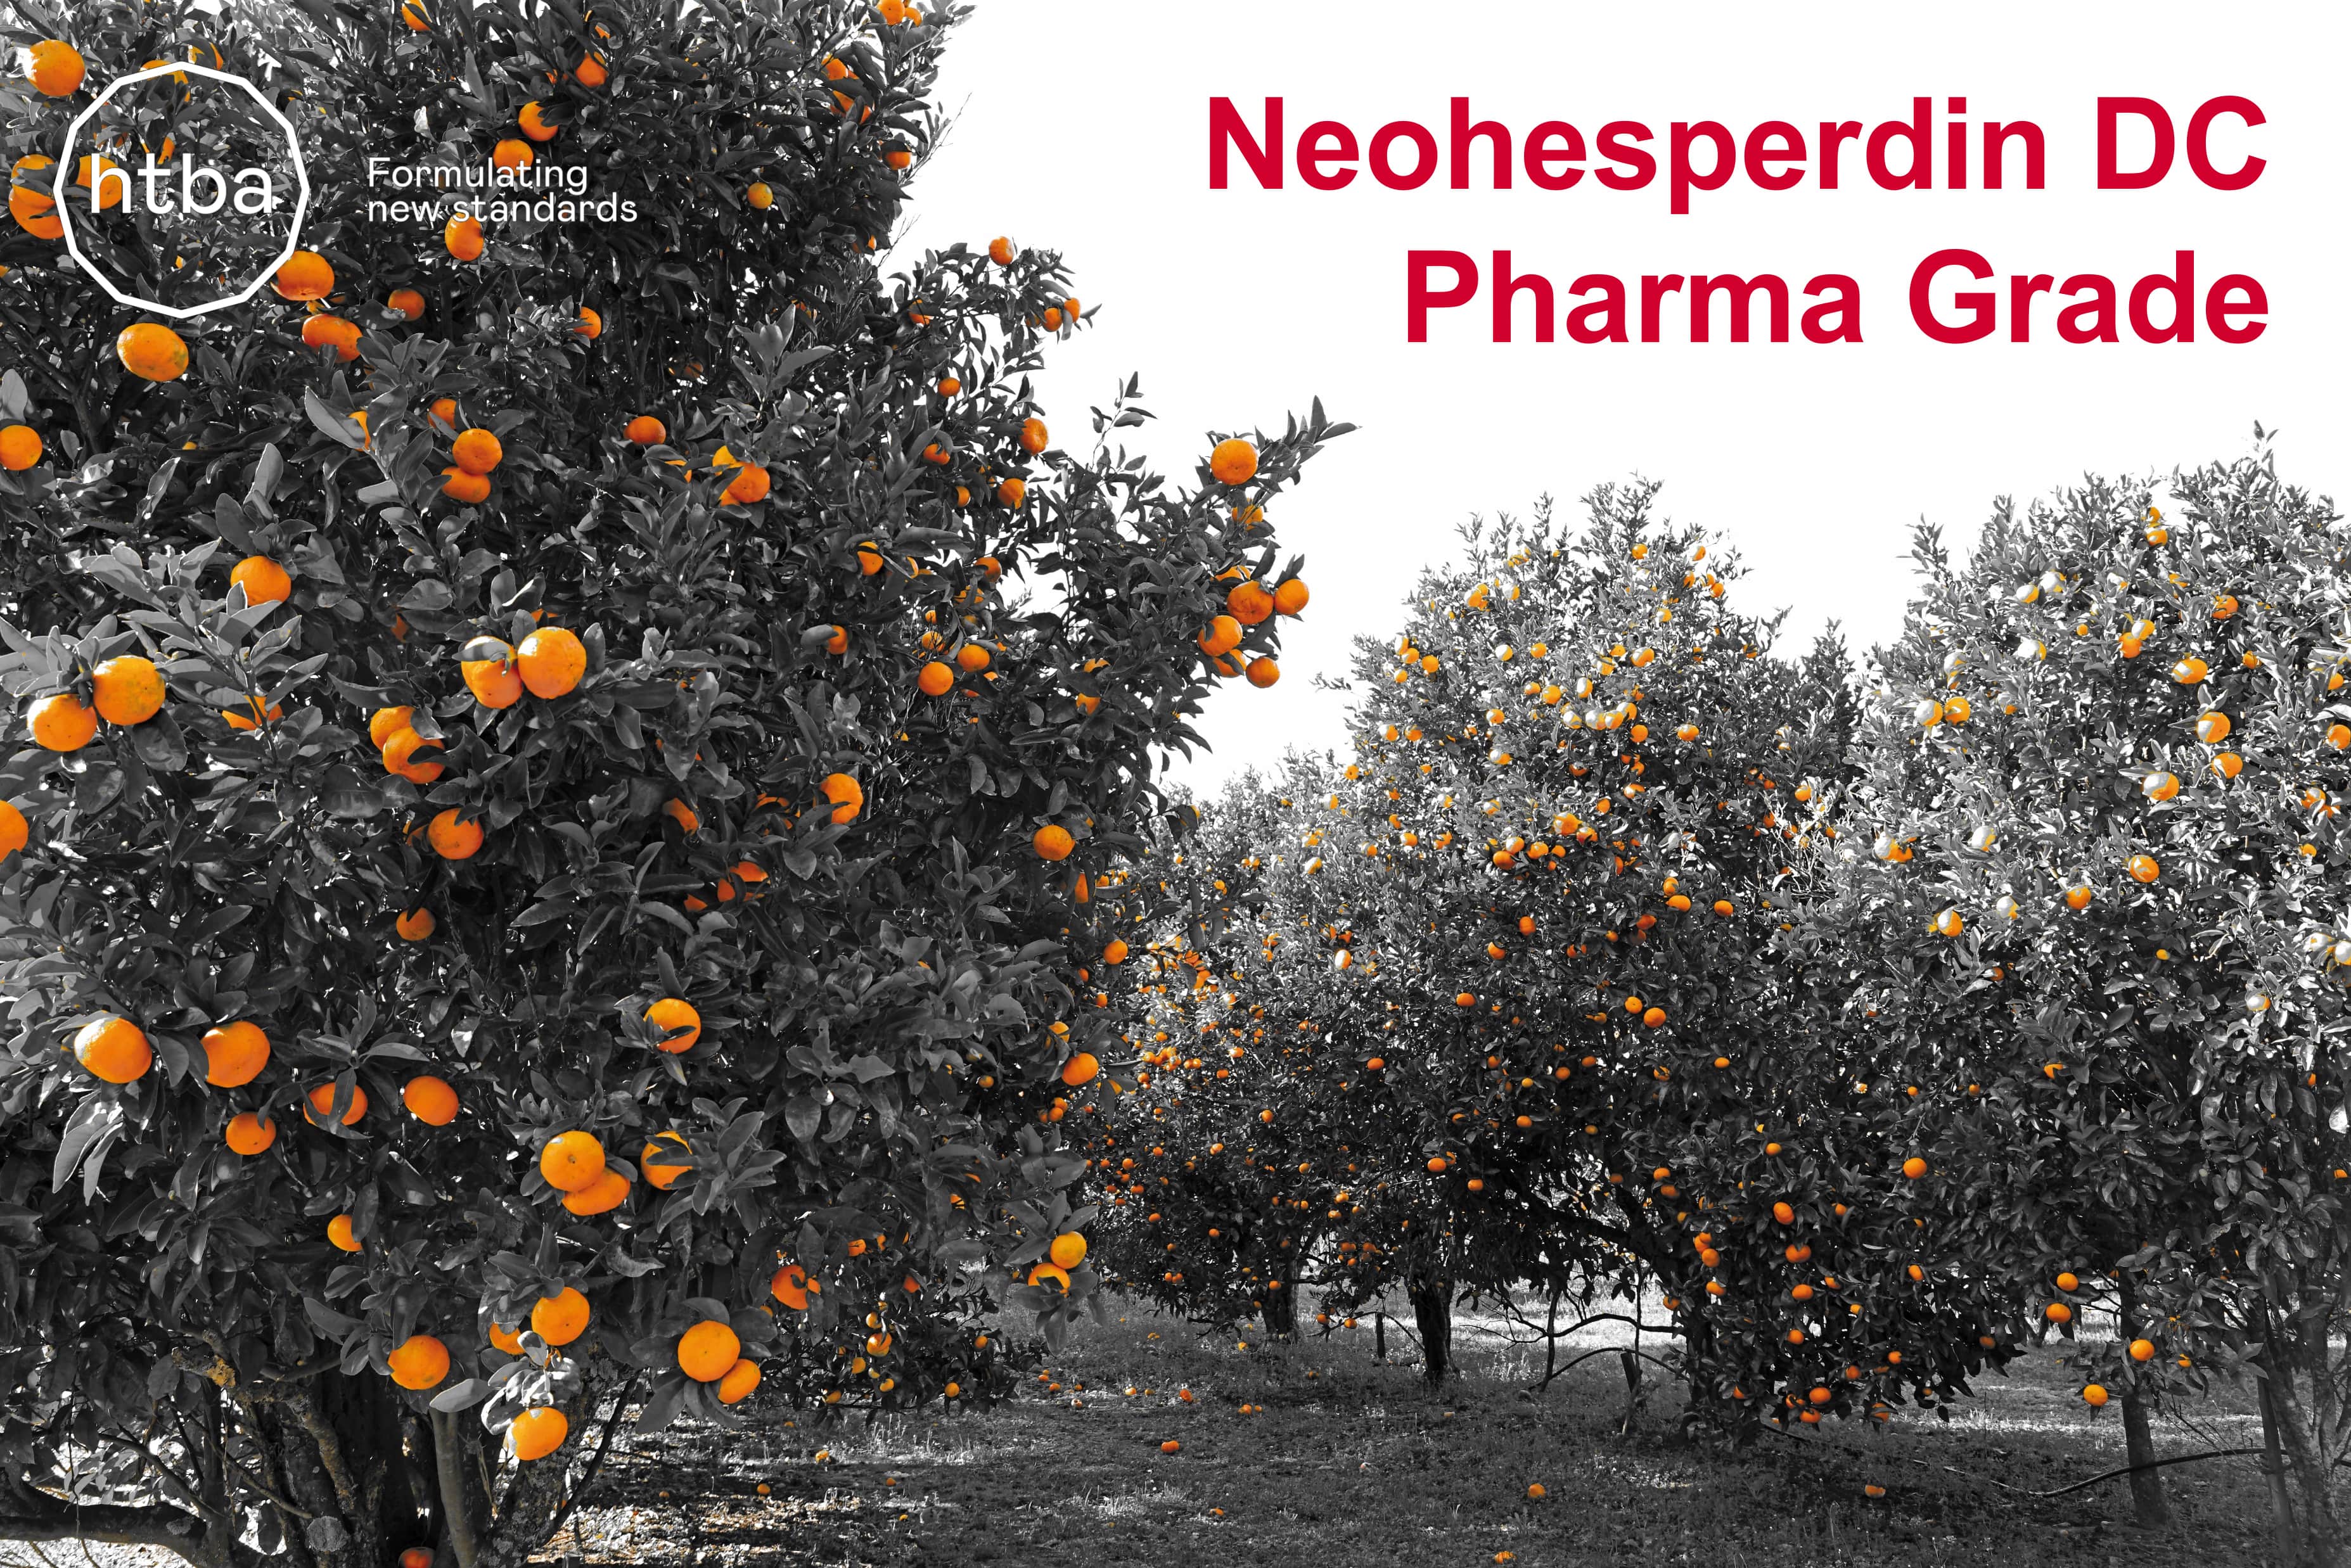 Neohesperdin DC Pharma Grade